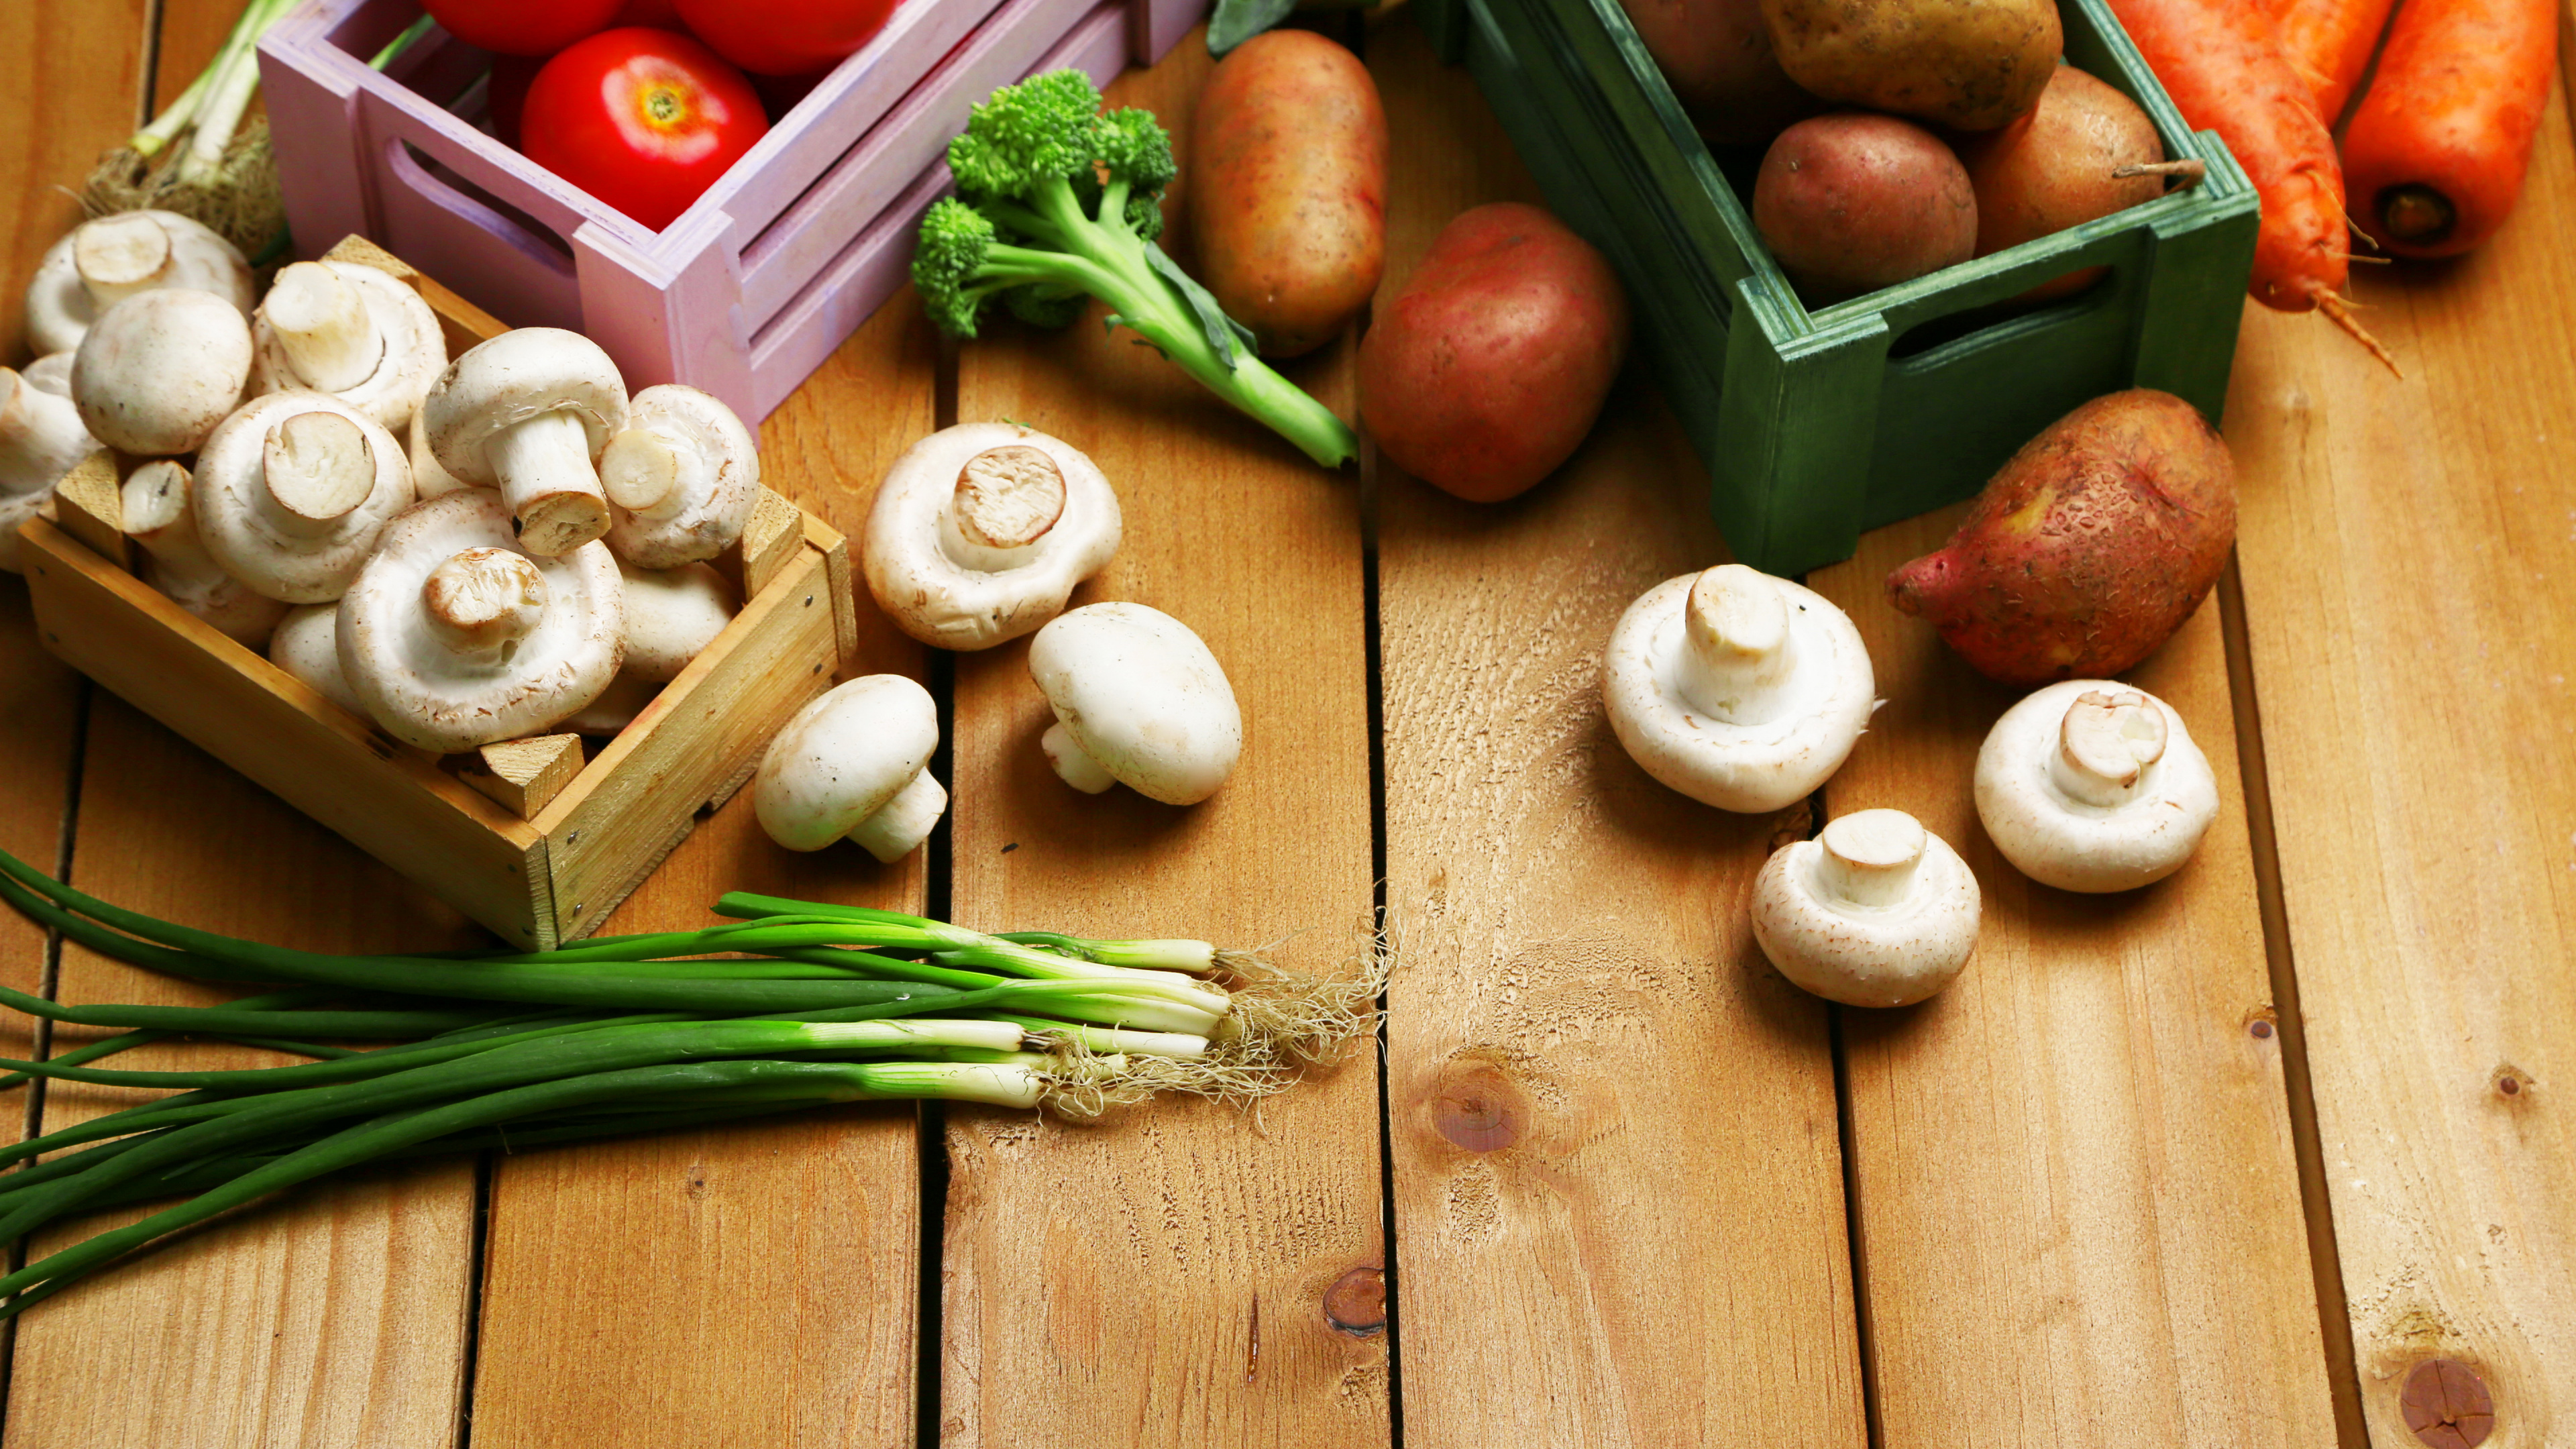 素食, 蘑菇, 马铃薯, 食品, 天然的食物 壁纸 3840x2160 允许